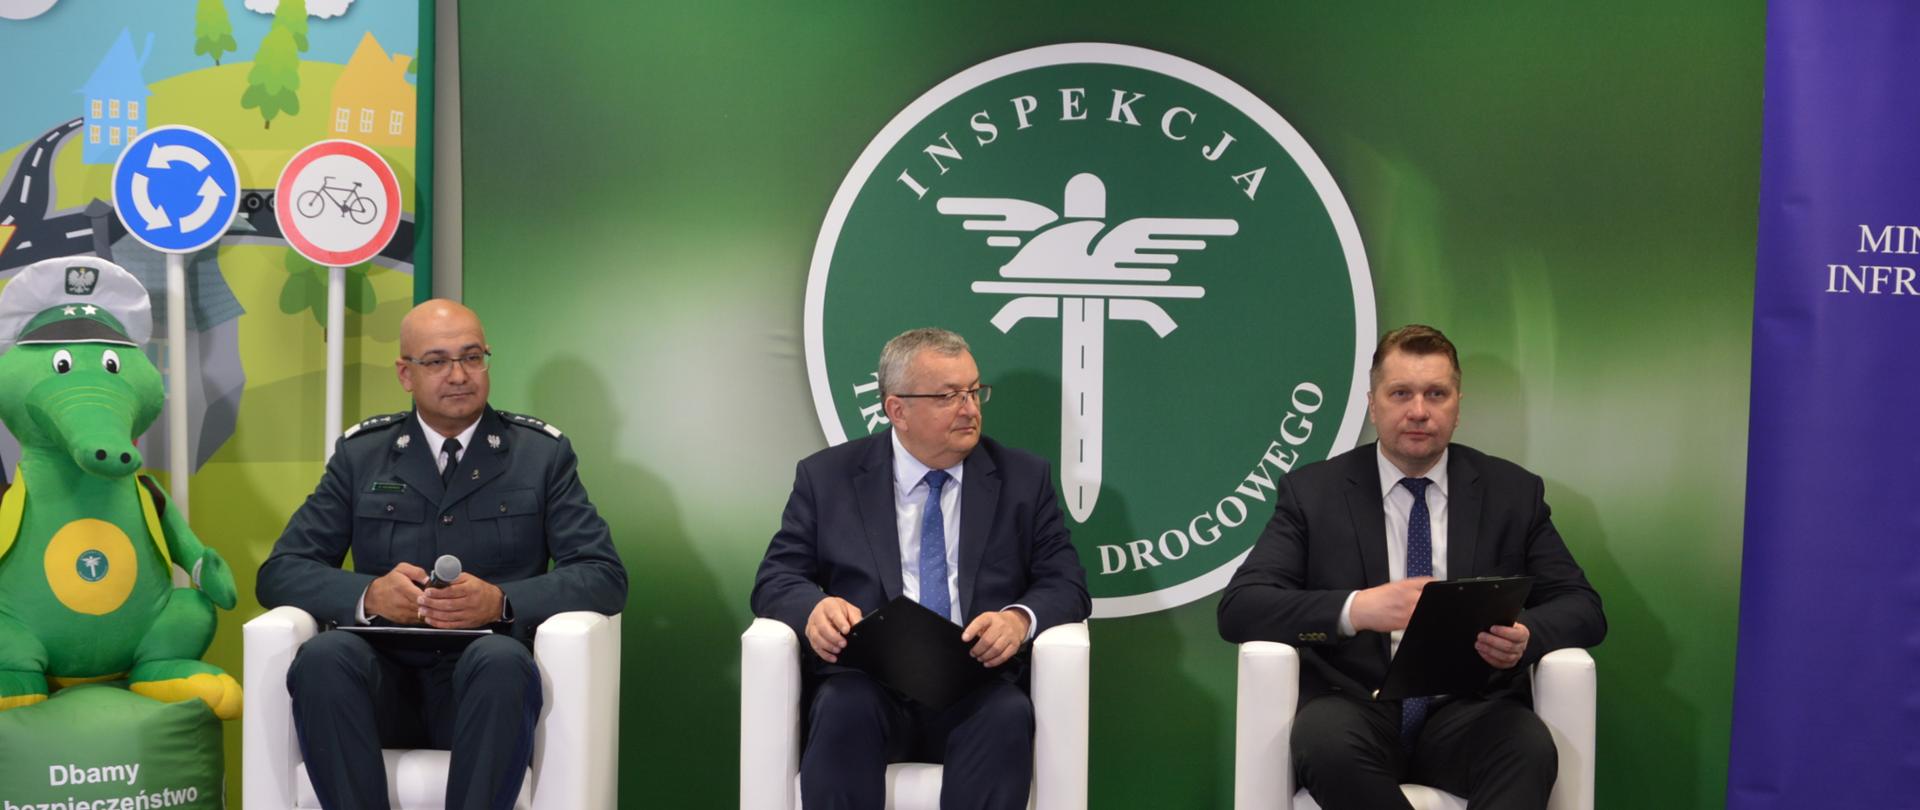 Od lewej siedzą Alvin Gajadhur, Główny Inspektor Transportu Drogowego, Andrzej Adamczyk, Minister Infrastruktury oraz minister Przemysław Czarnek. Za nimi znajduje się logo Inspekcji Transportu Drogowego.